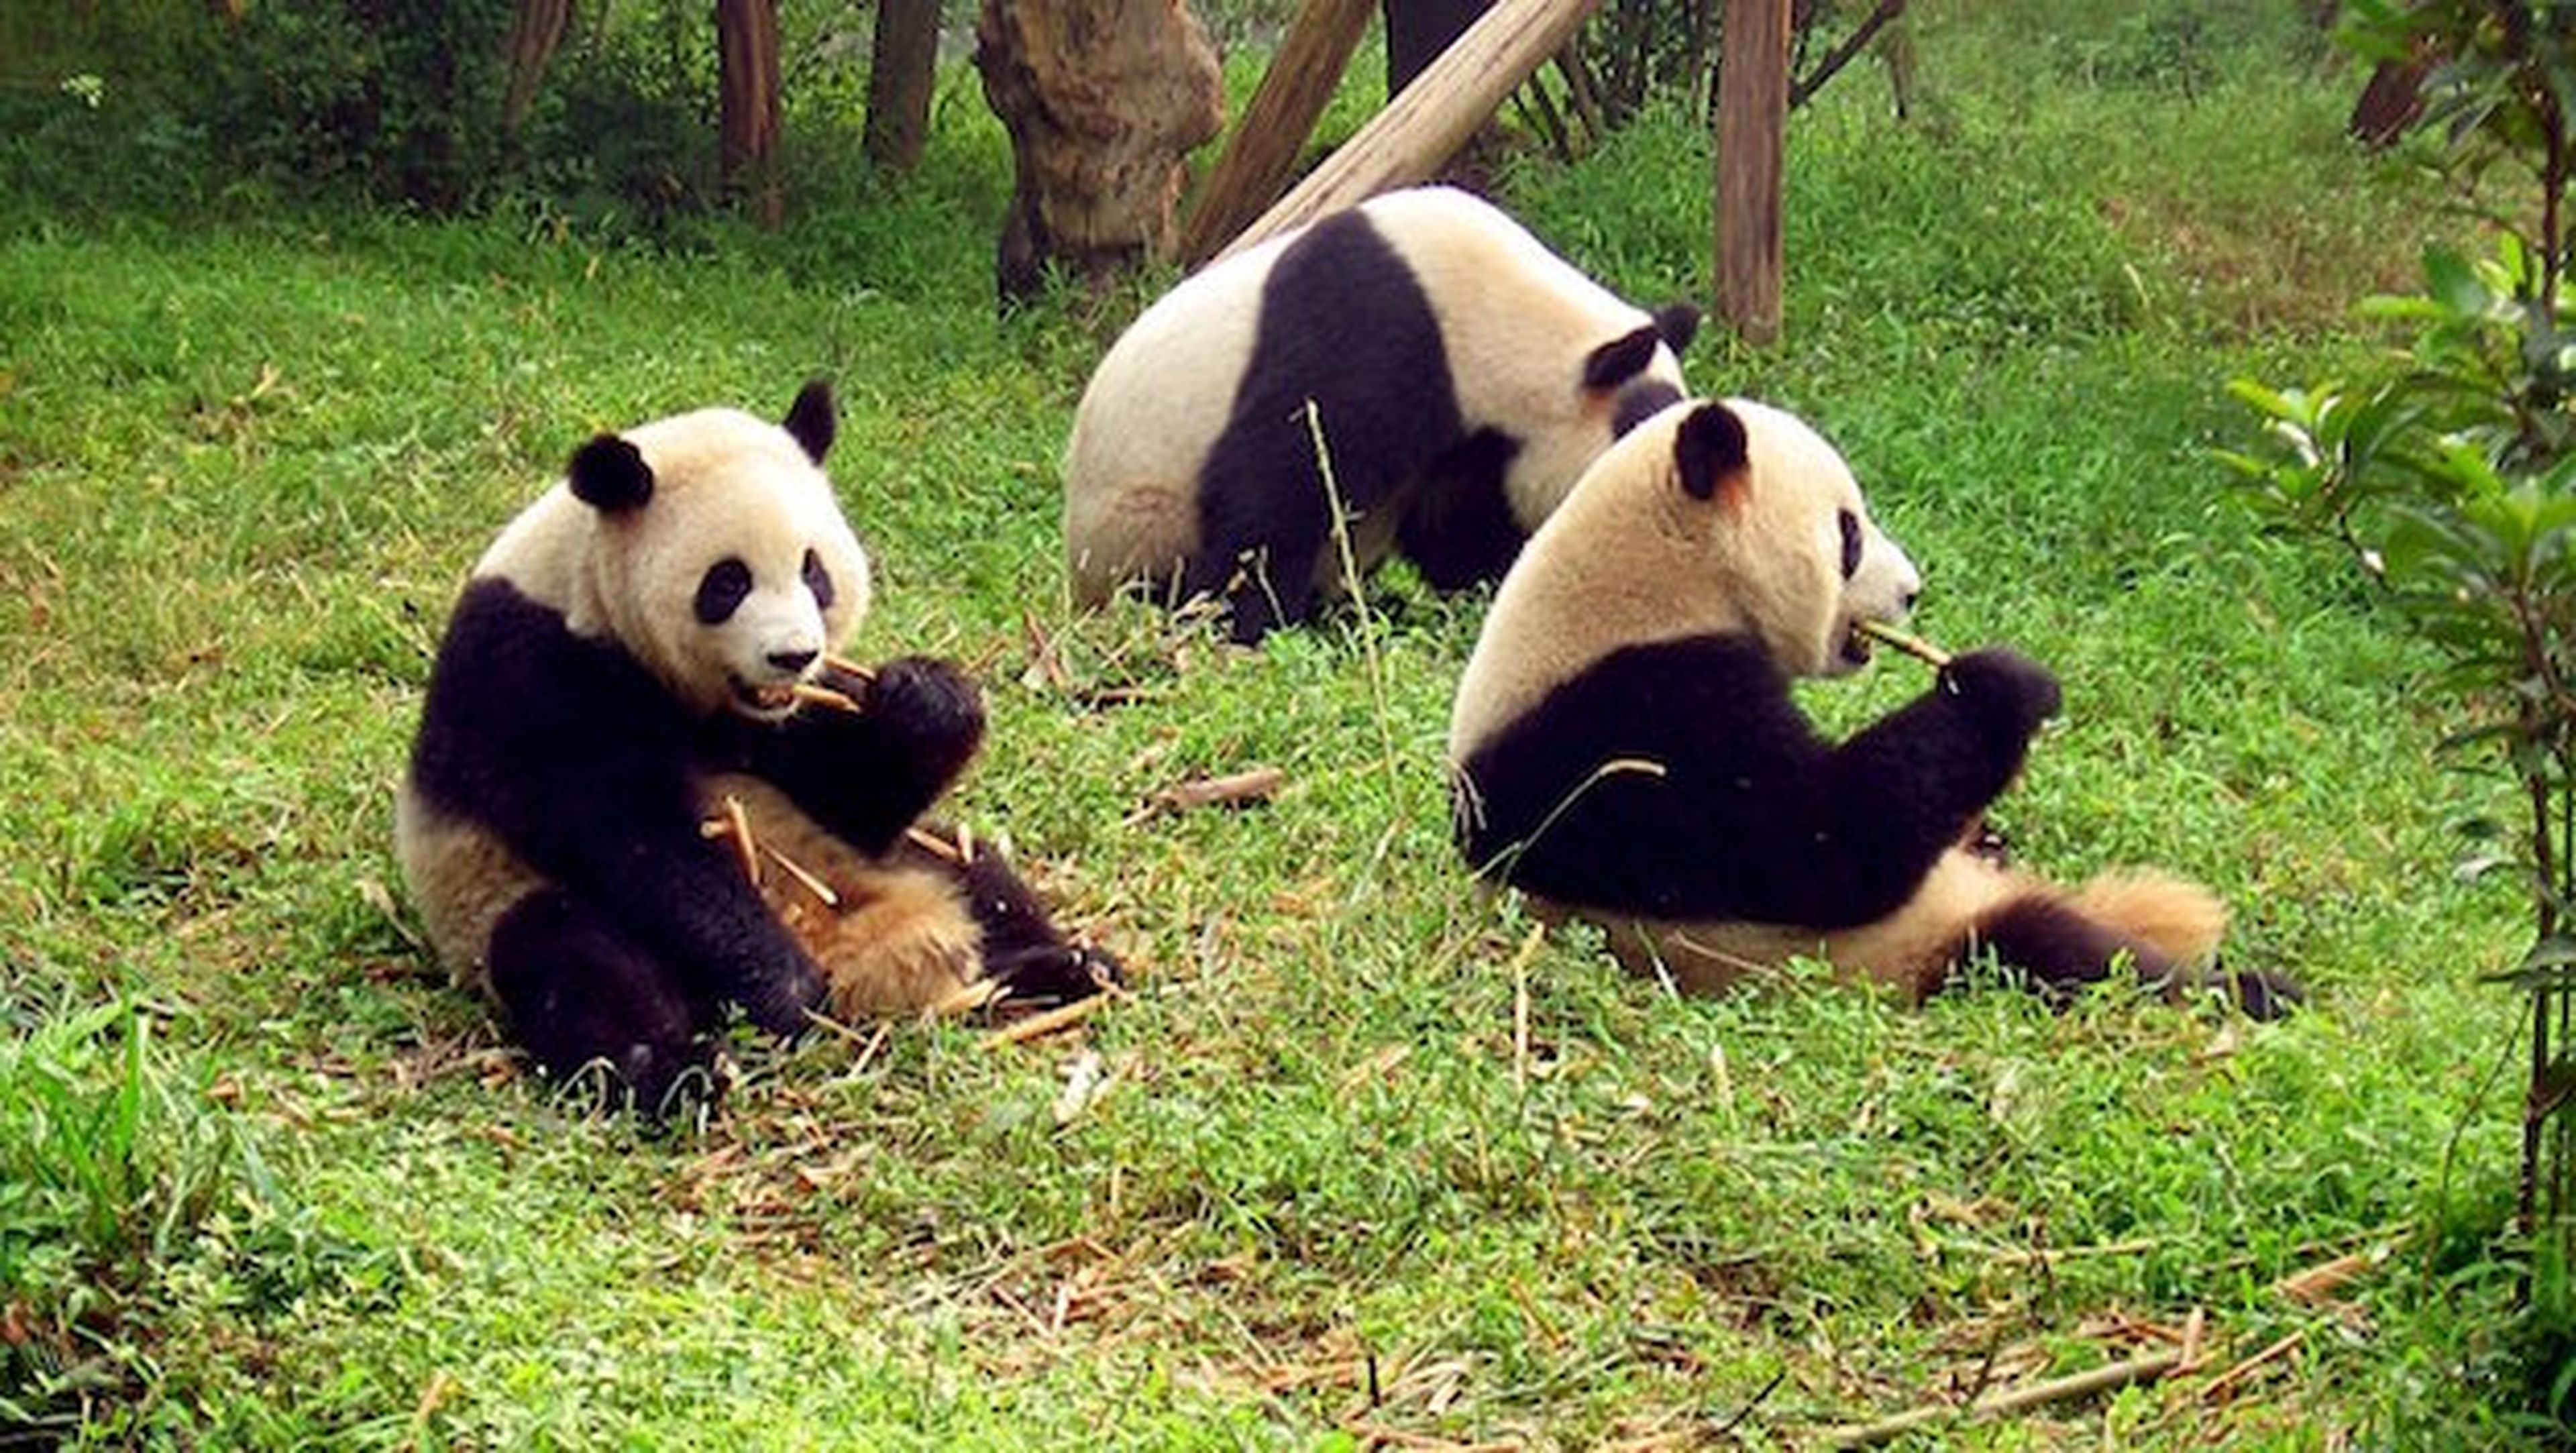 Científicos chinos descifran el lenguaje de los osos panda